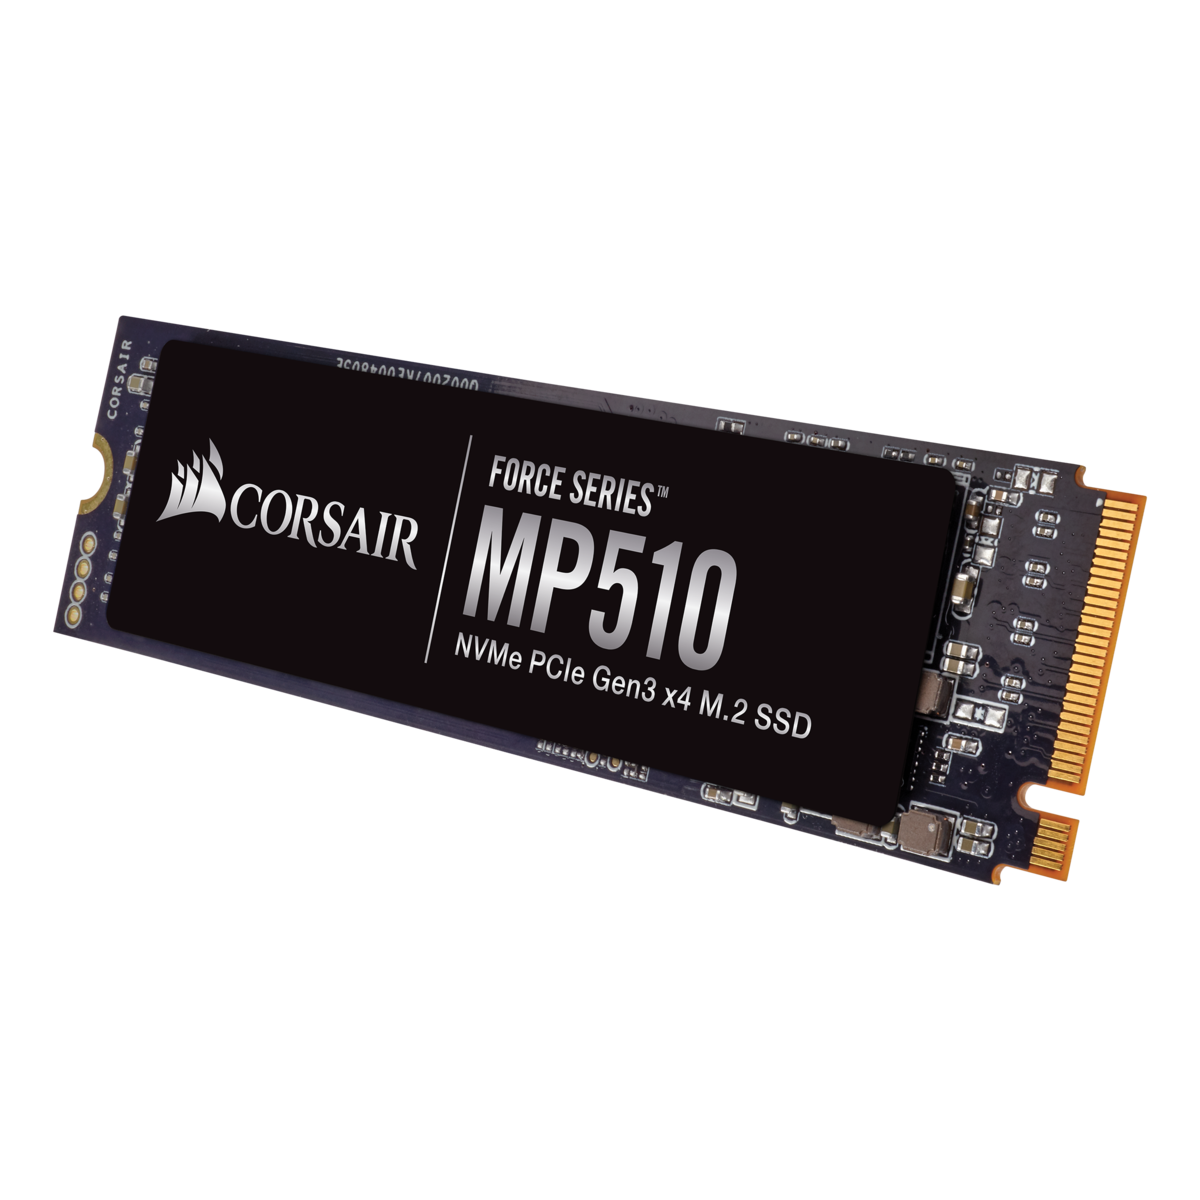 CORSAIR 480GB M.2 SSD # F480GBMP510